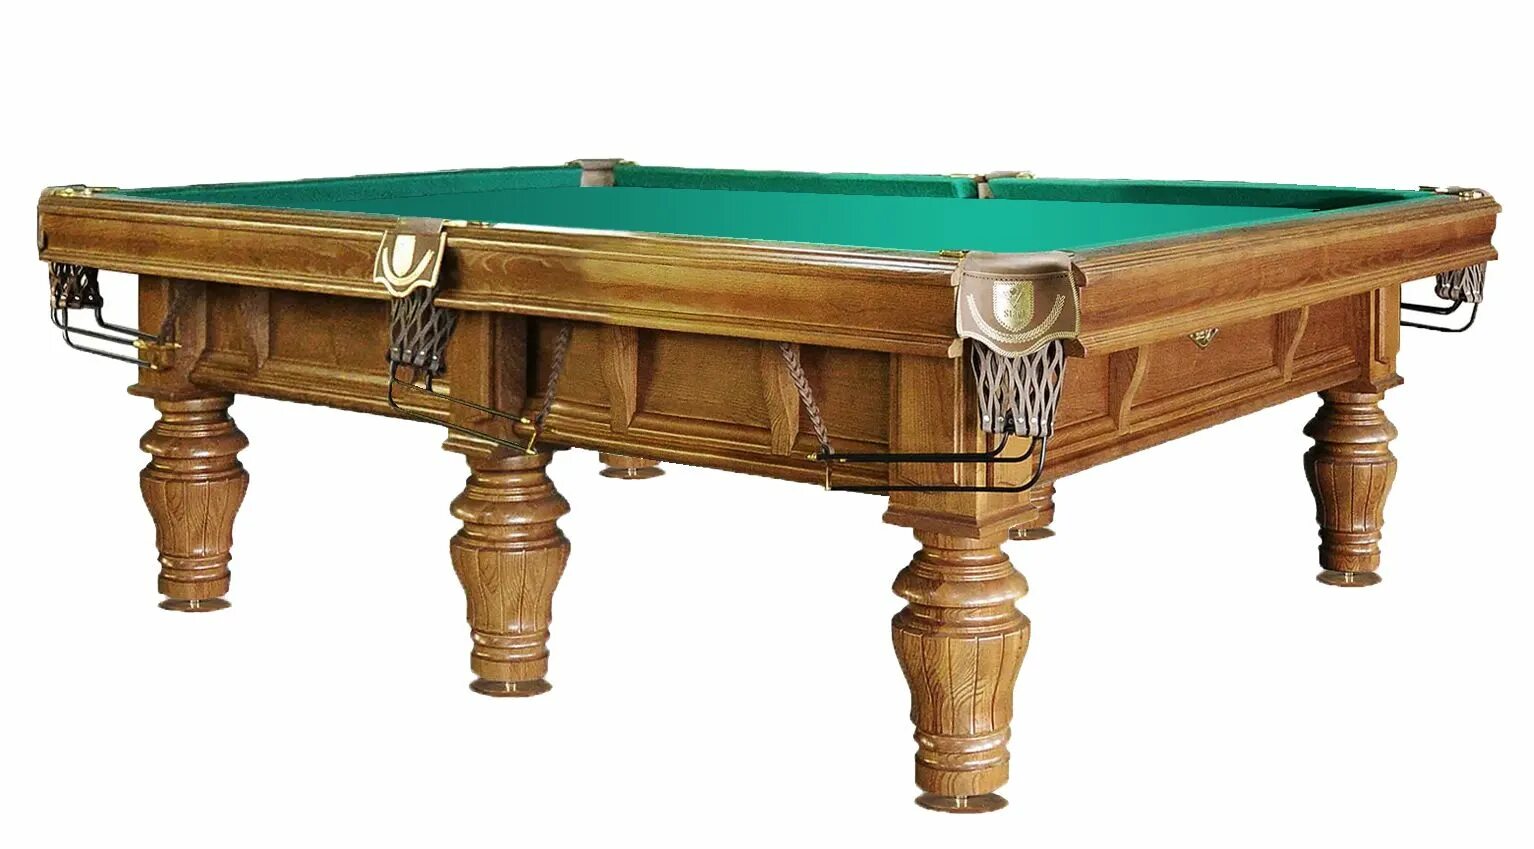 Бильярдный стол 4 фута bm003. Бильярдный стол Billiard-Ball 9 футов (пул). Бильярдный стол ”Камелот” пул. Бильярдные столы большие